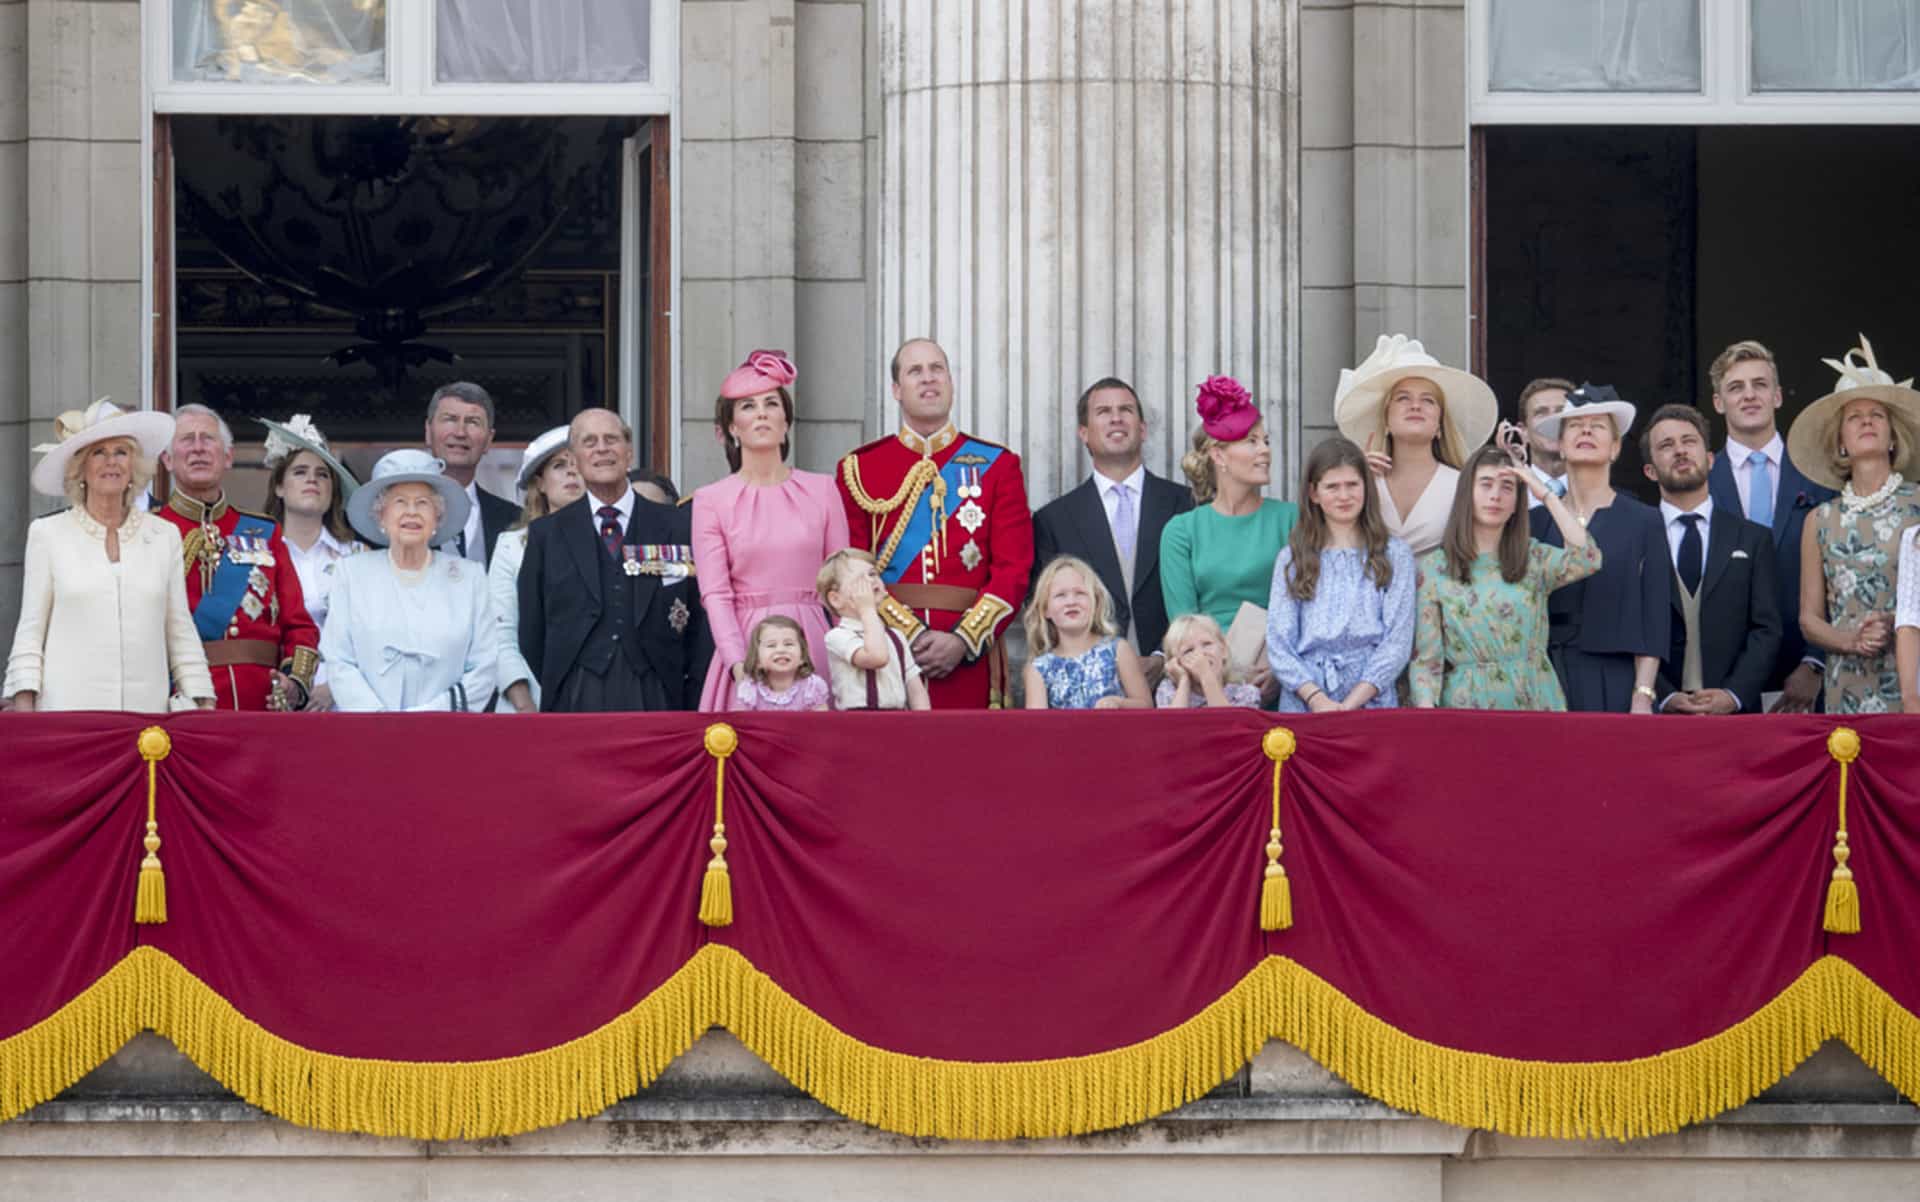 Uno de los últimos actos públicos del príncipe Felipe, en el balcón del Buckingham Palace con los demás miembros de la familia <a href="https://es.starsinsider.com/celebrity/251379/estos-famosos-provienen-de-la-realeza">real</a>.